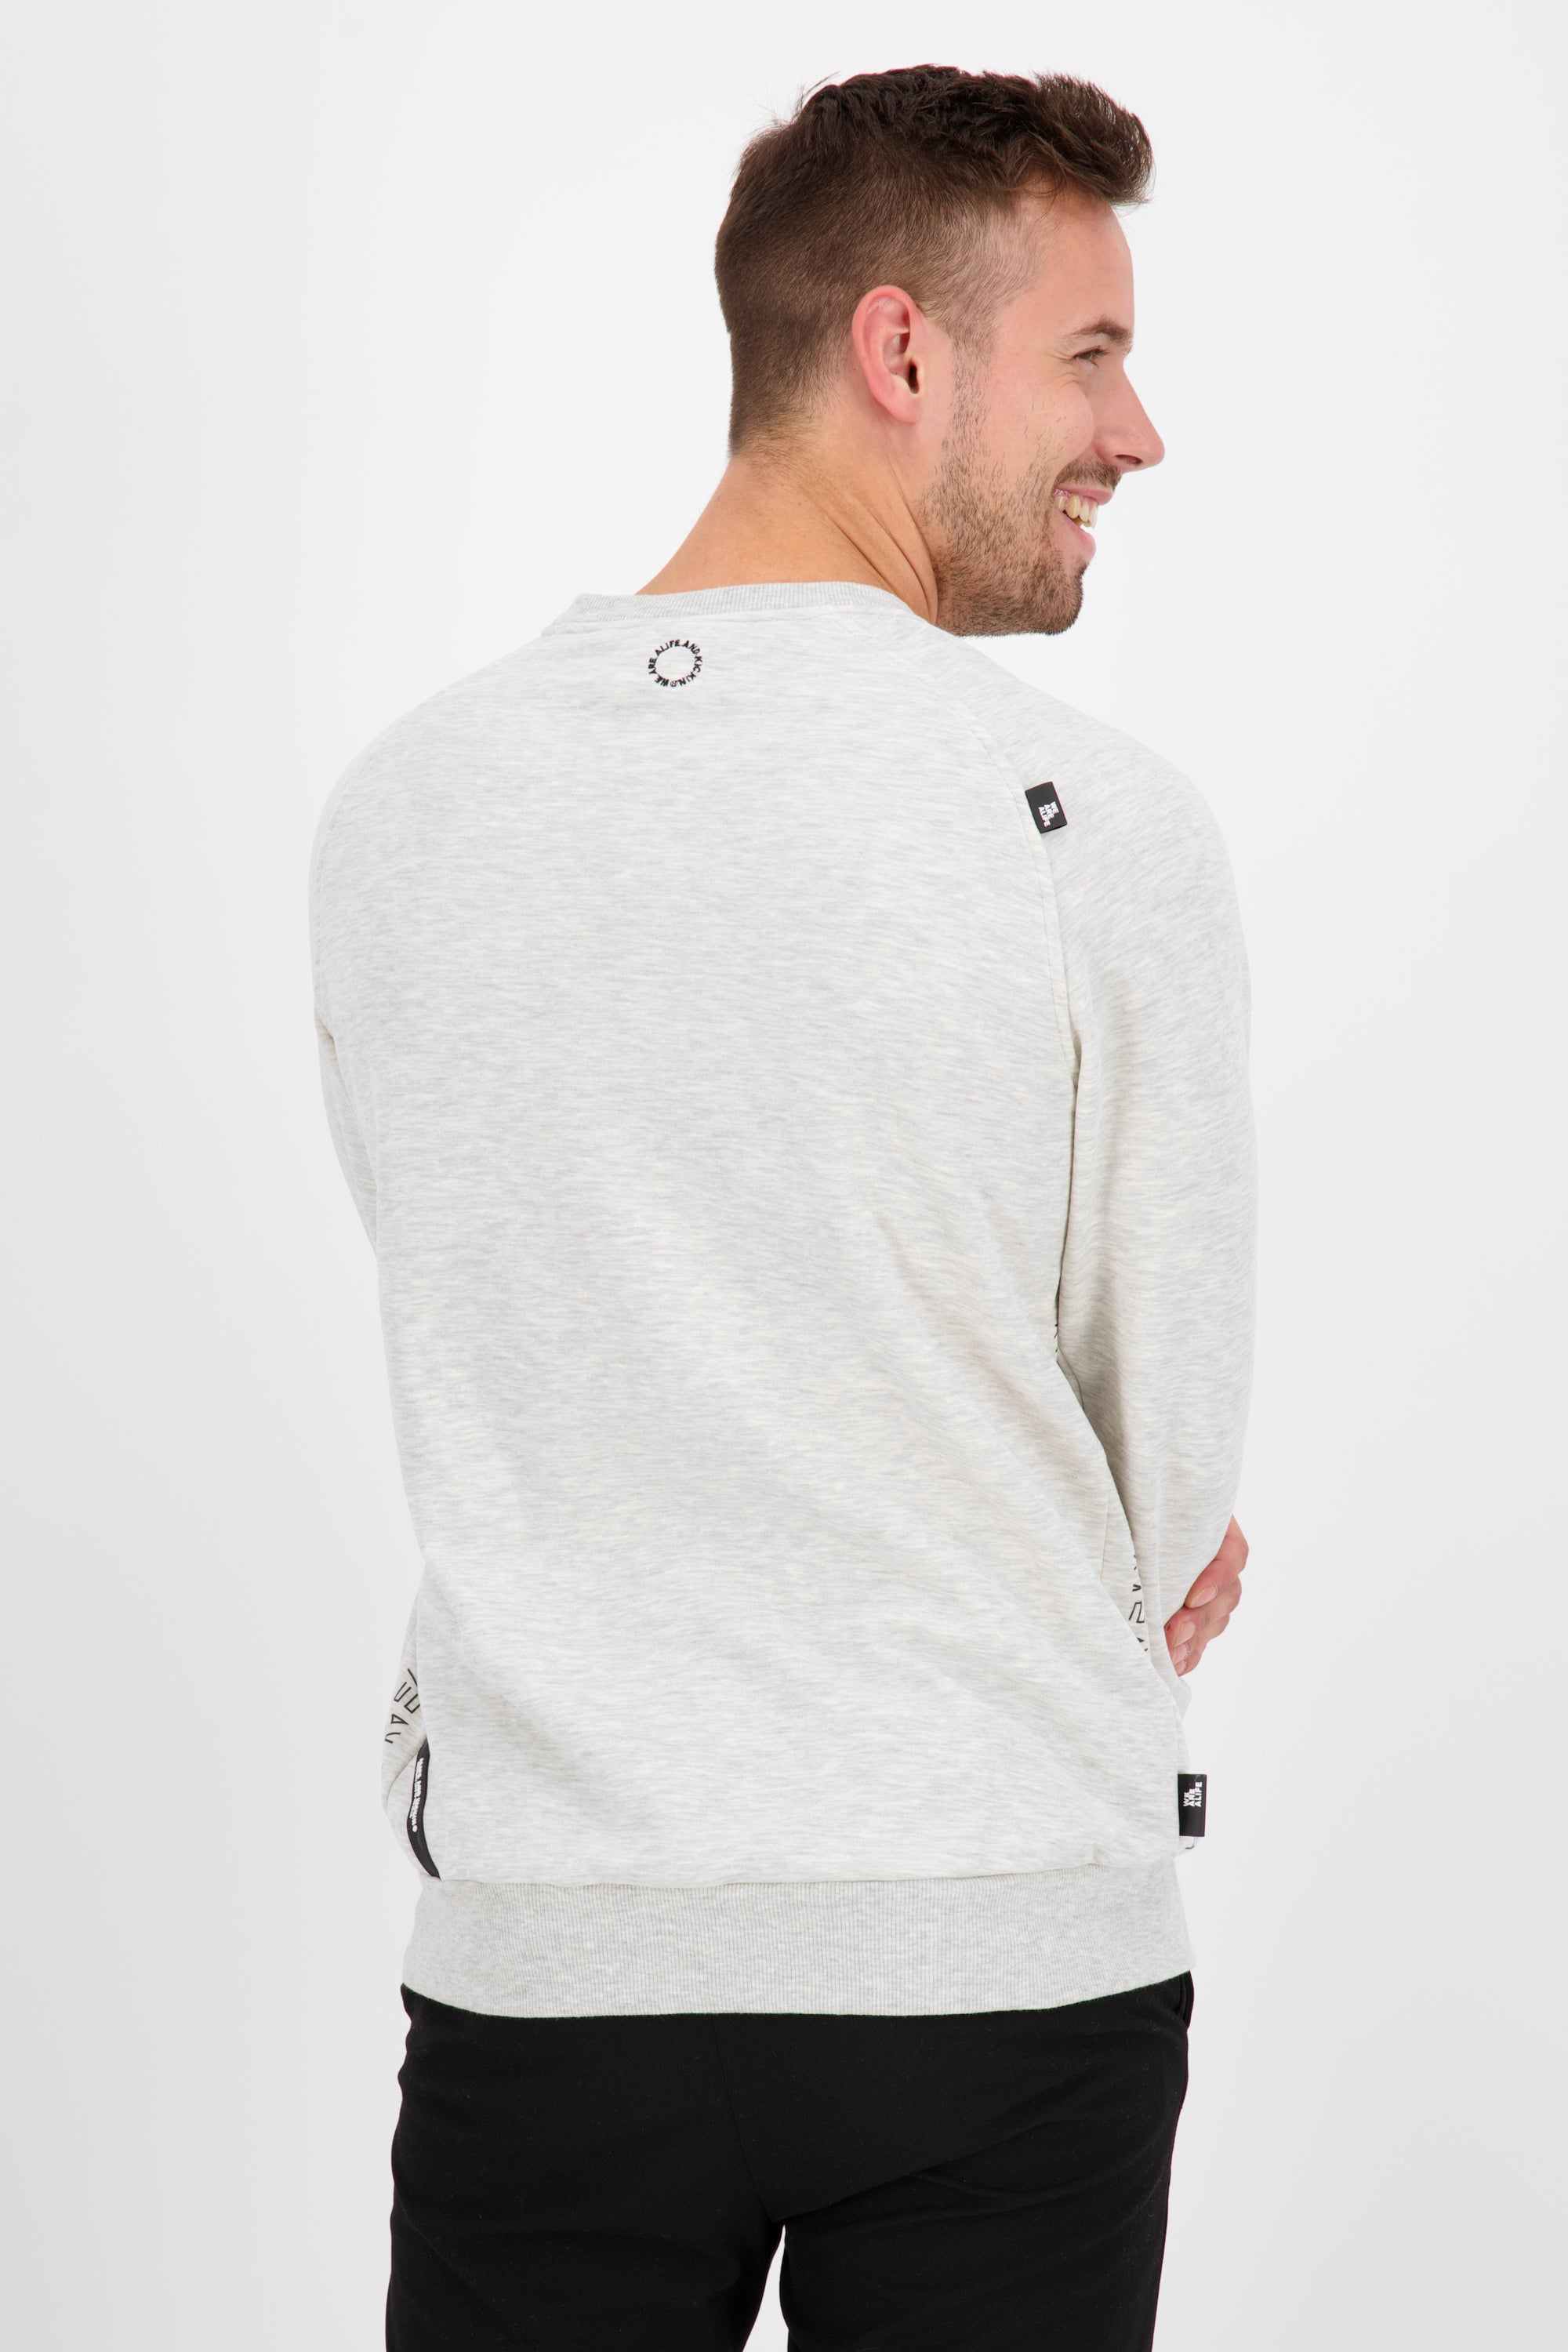 VinnAK A Sweatshirt mit Tasche Grau